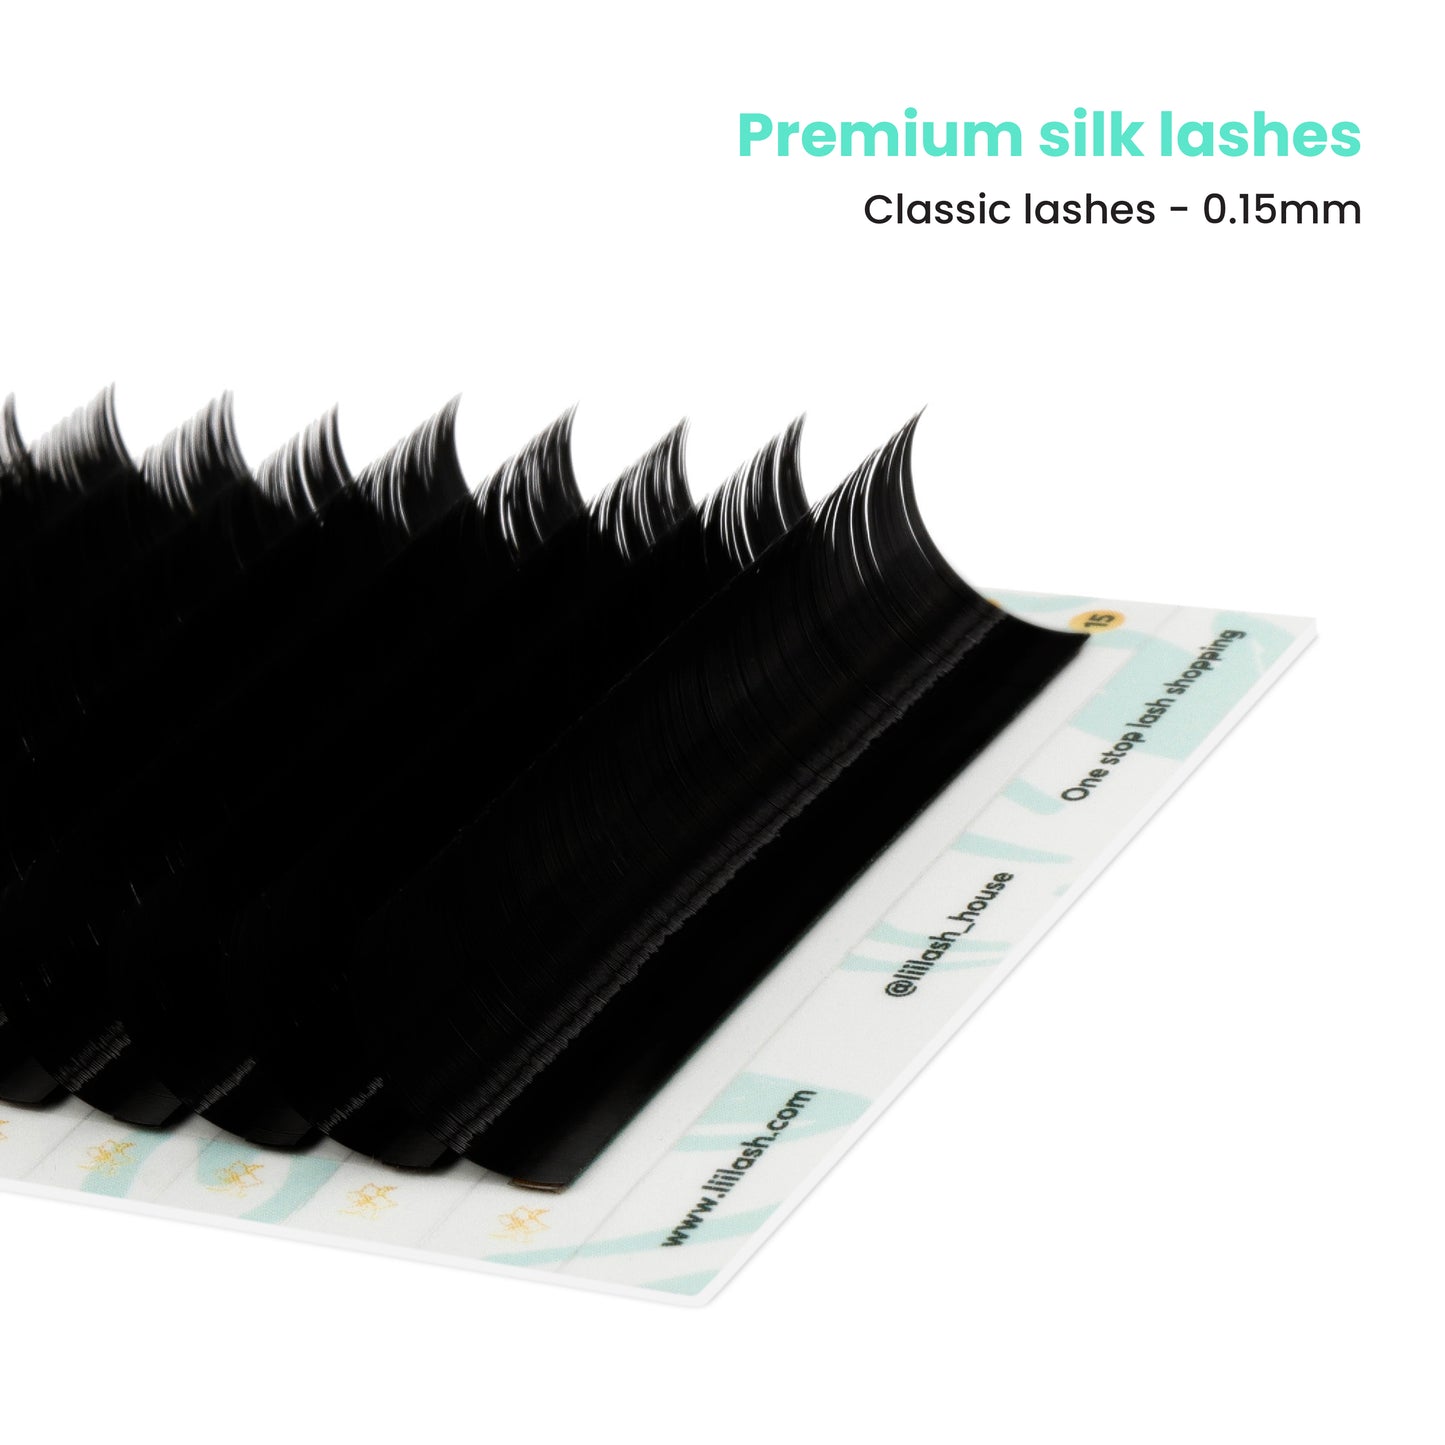 Premium Mink classic lashes 0.15mm